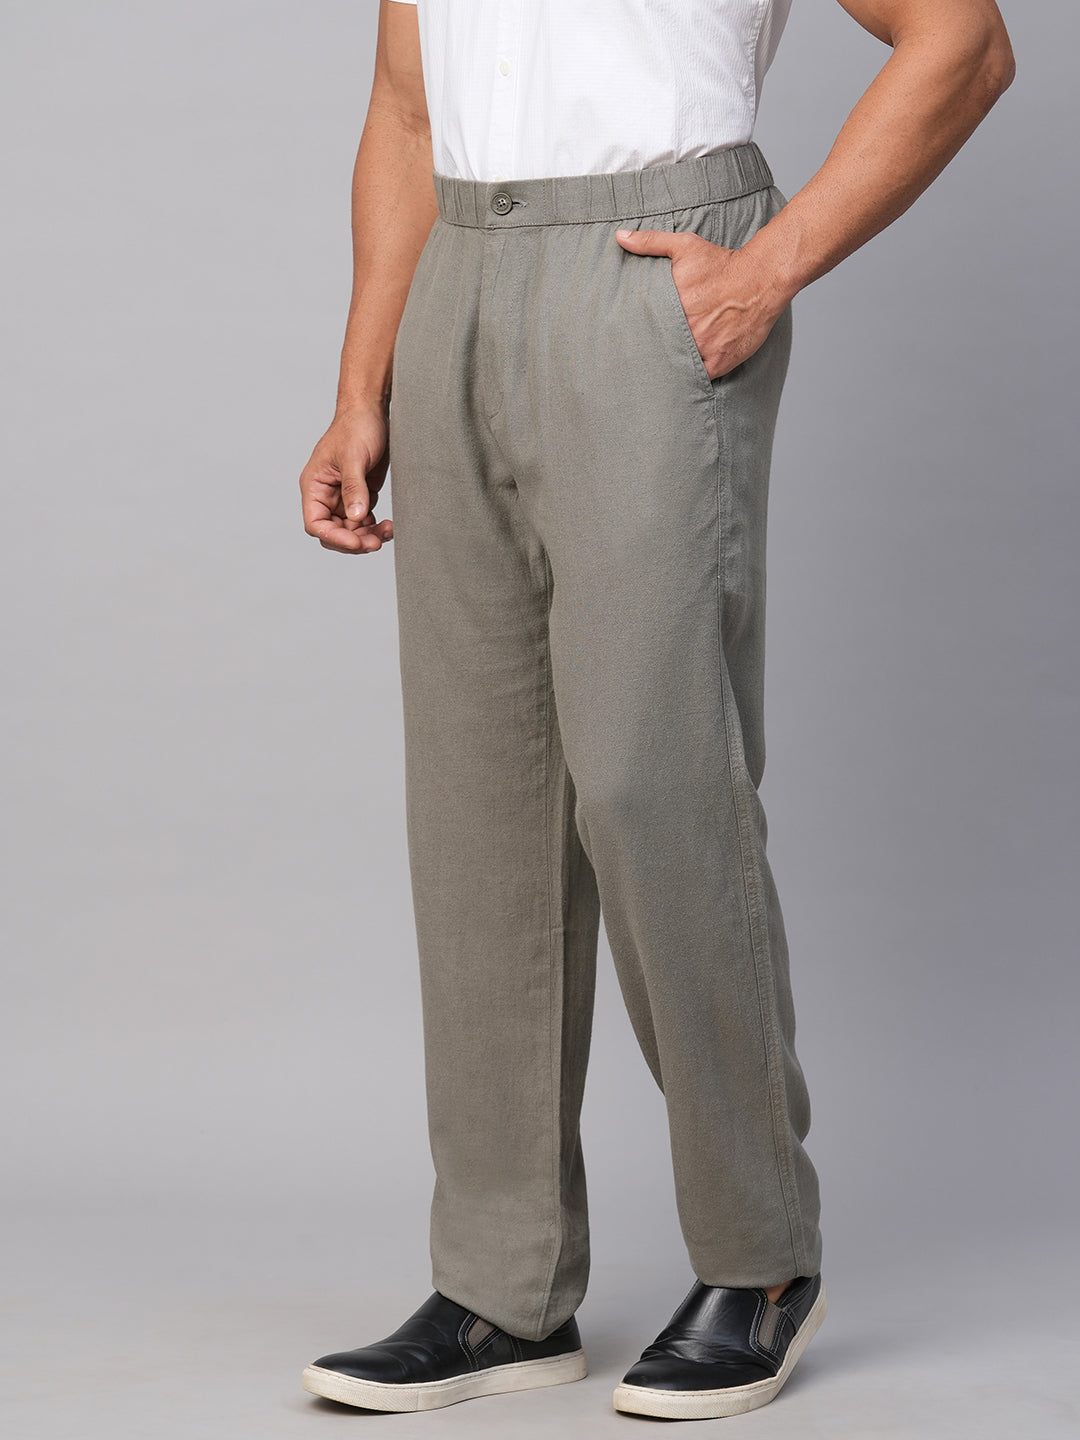 Buy Basic Men's Cotton Linen Pants Male Casual Solid Color